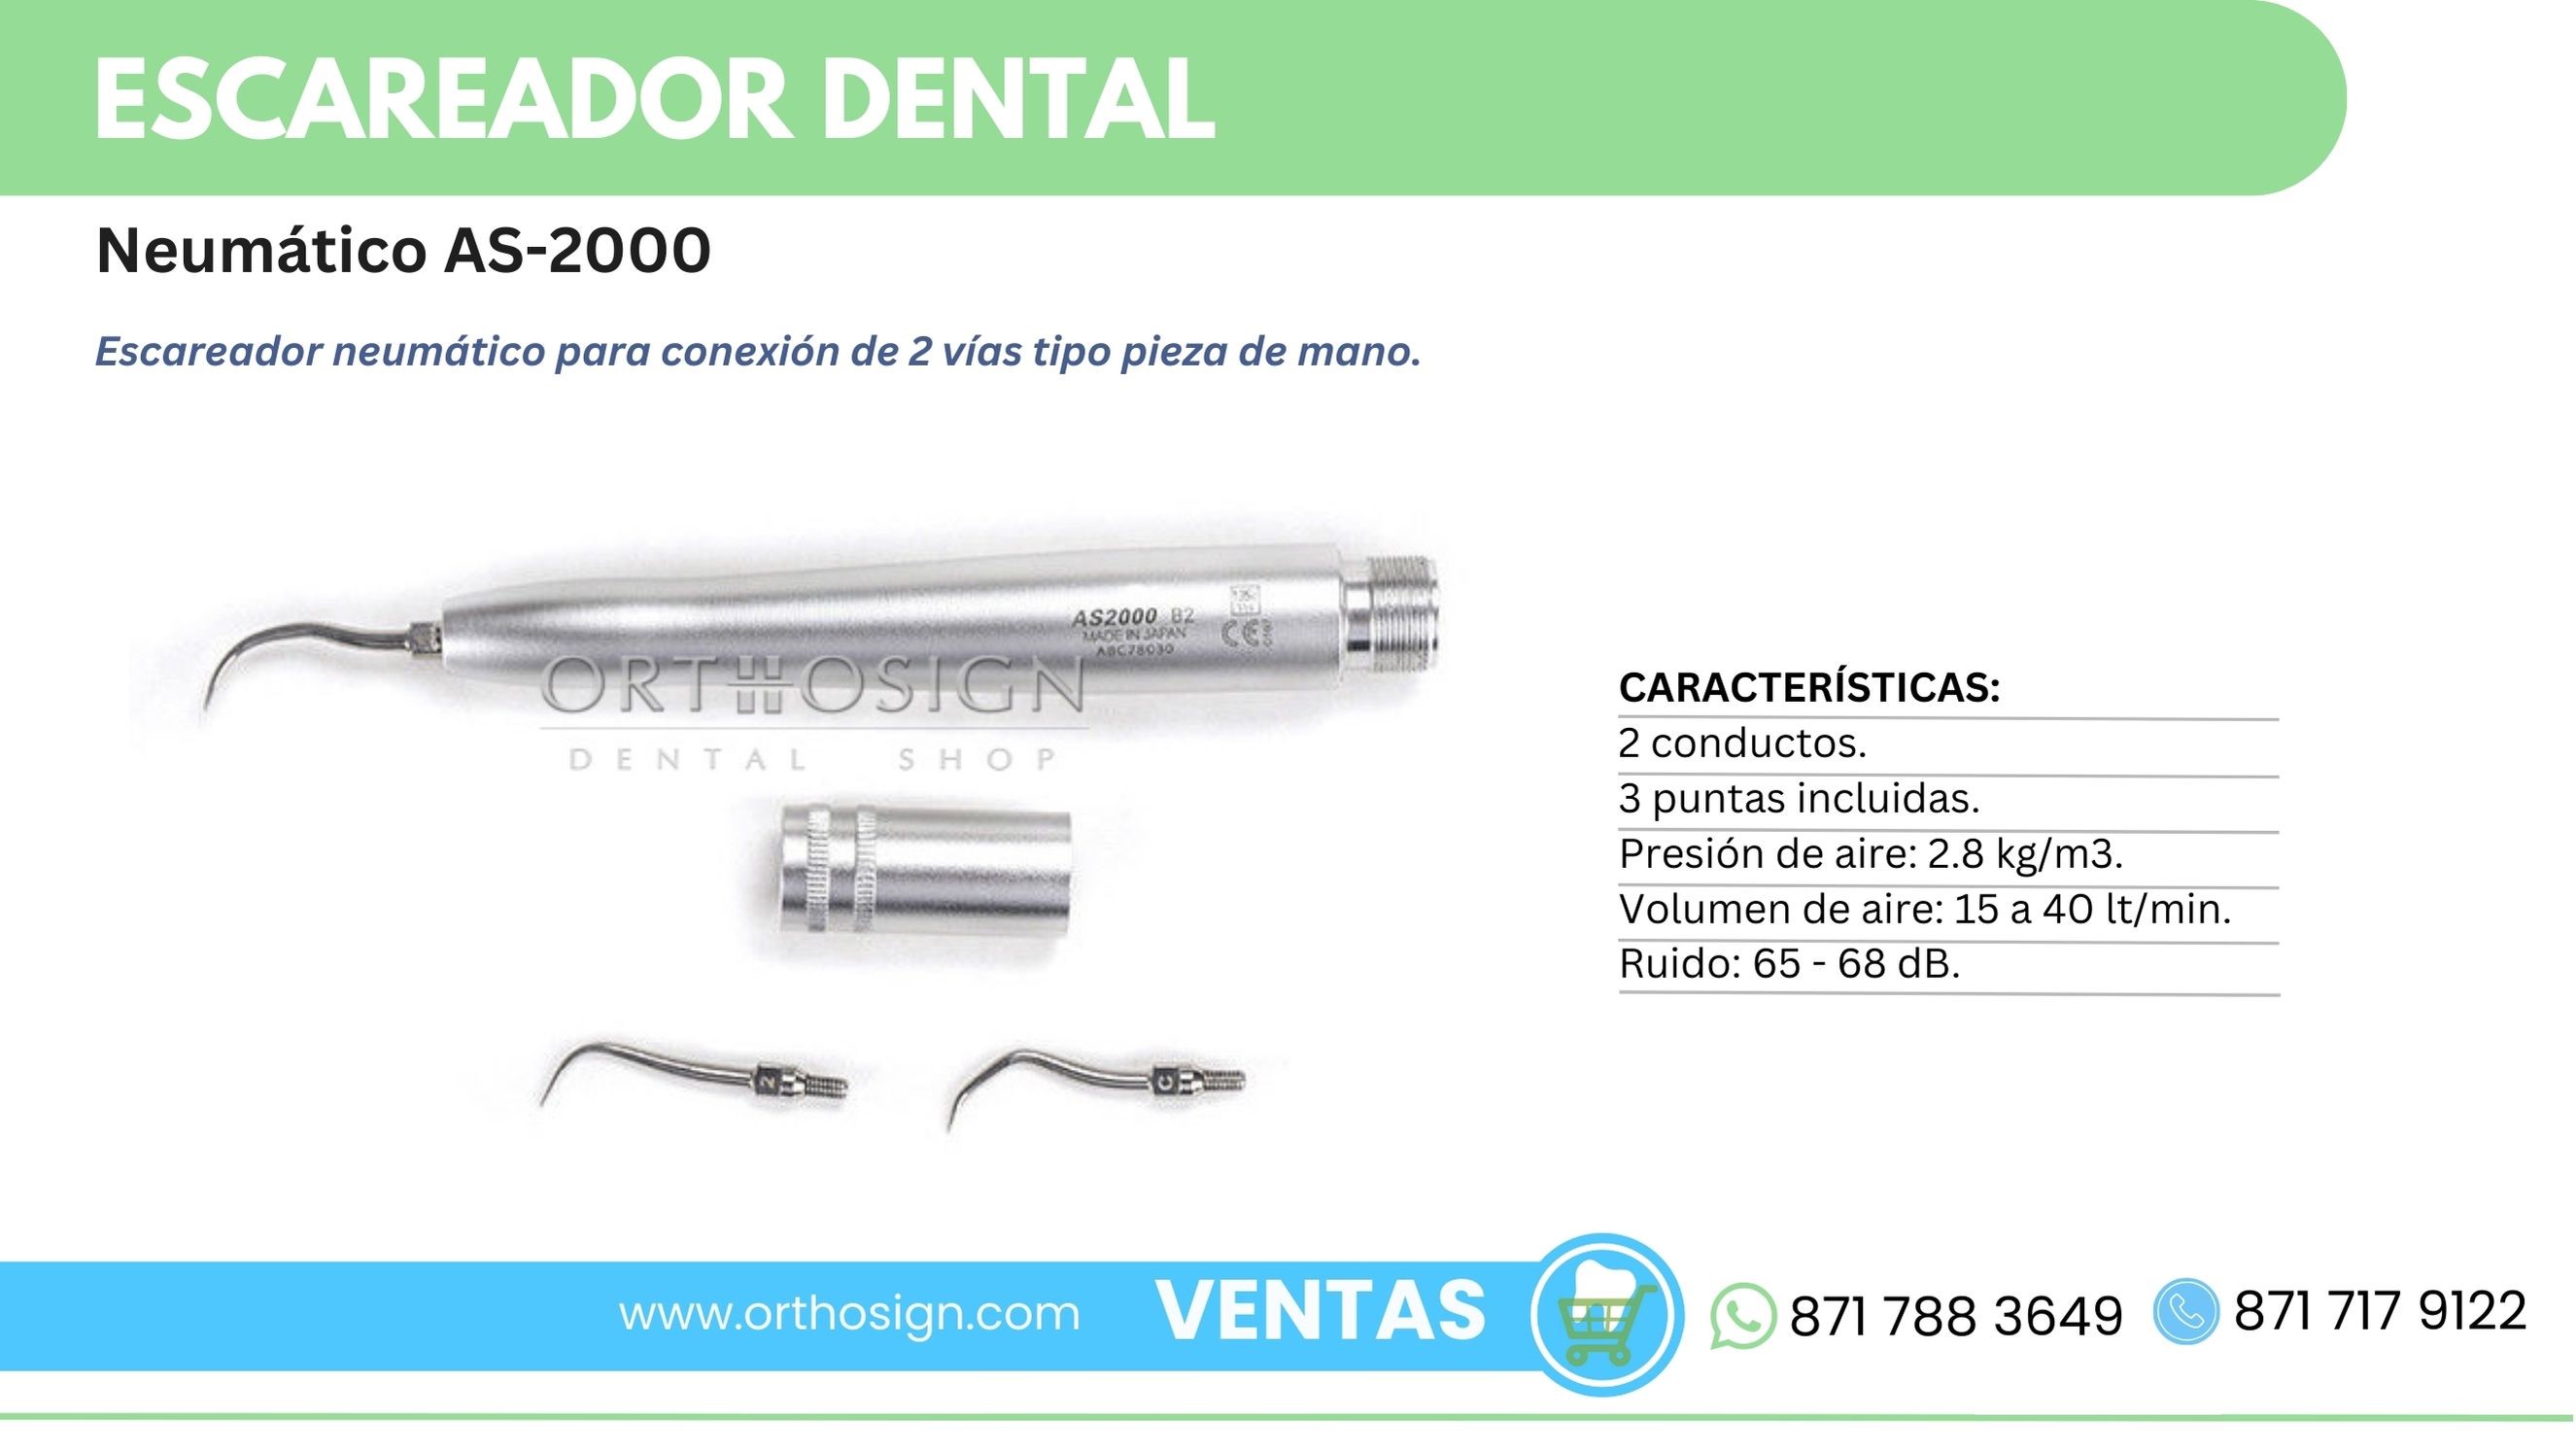 Escareador dental neumático AS-2000 Orthosign